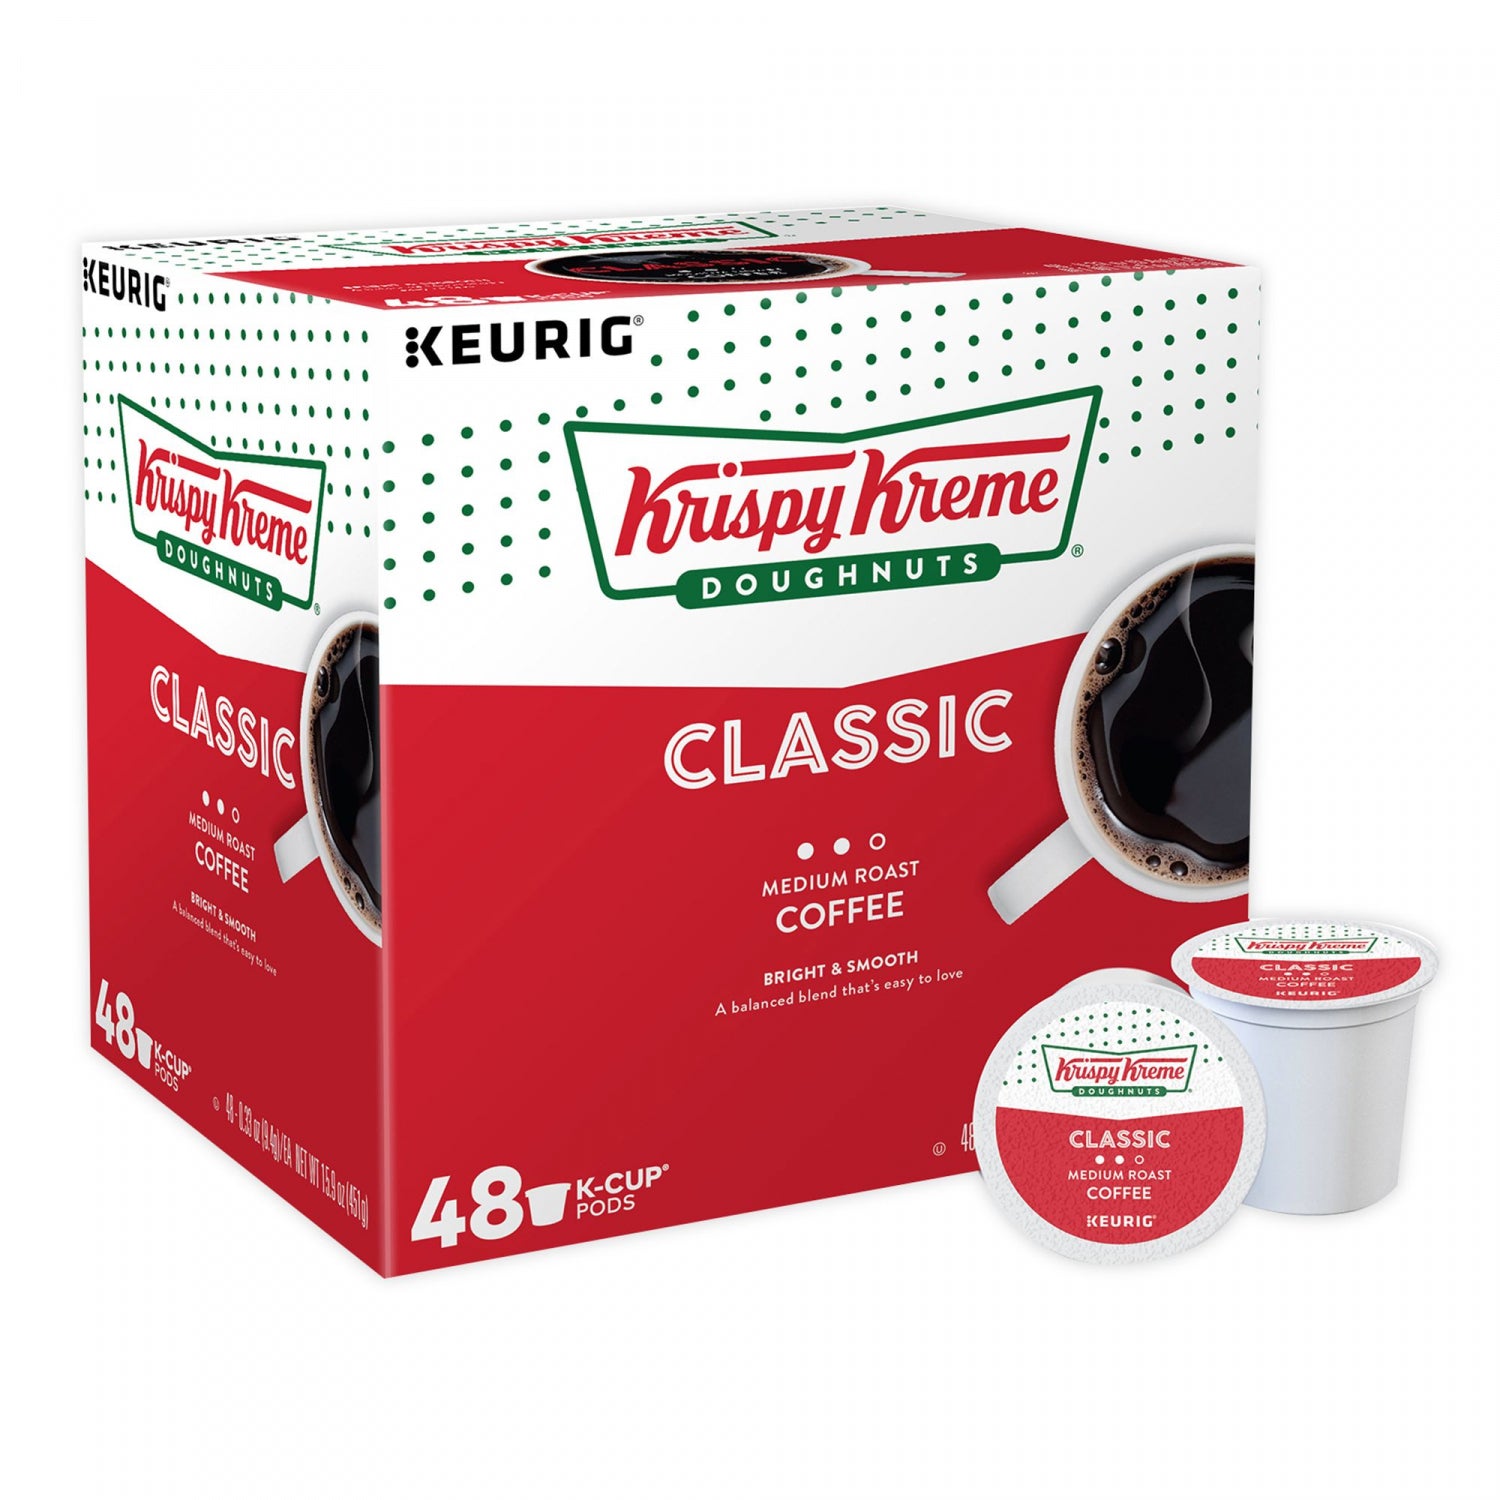 Krispy Kreme Classic Medium Roast Coffee Keurig K-Cup Pods 48-Count